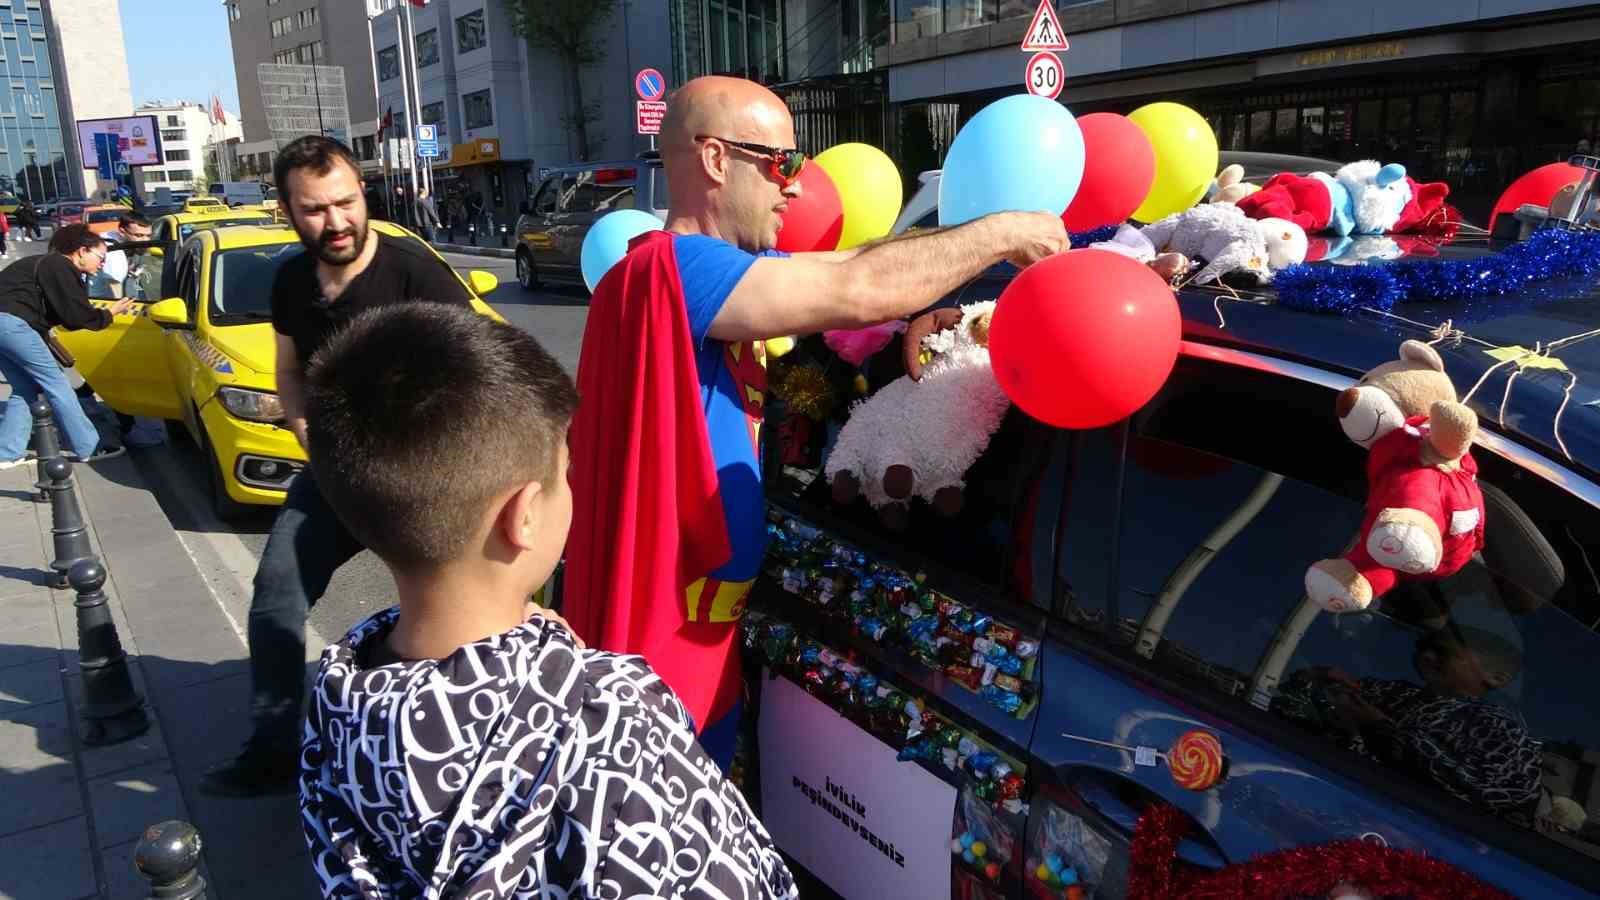 taksimde arabasini sekerlemelerle donatan supermen kostumlu adam cocuklarin ilgi odagi oldu 4 LjLFhww9